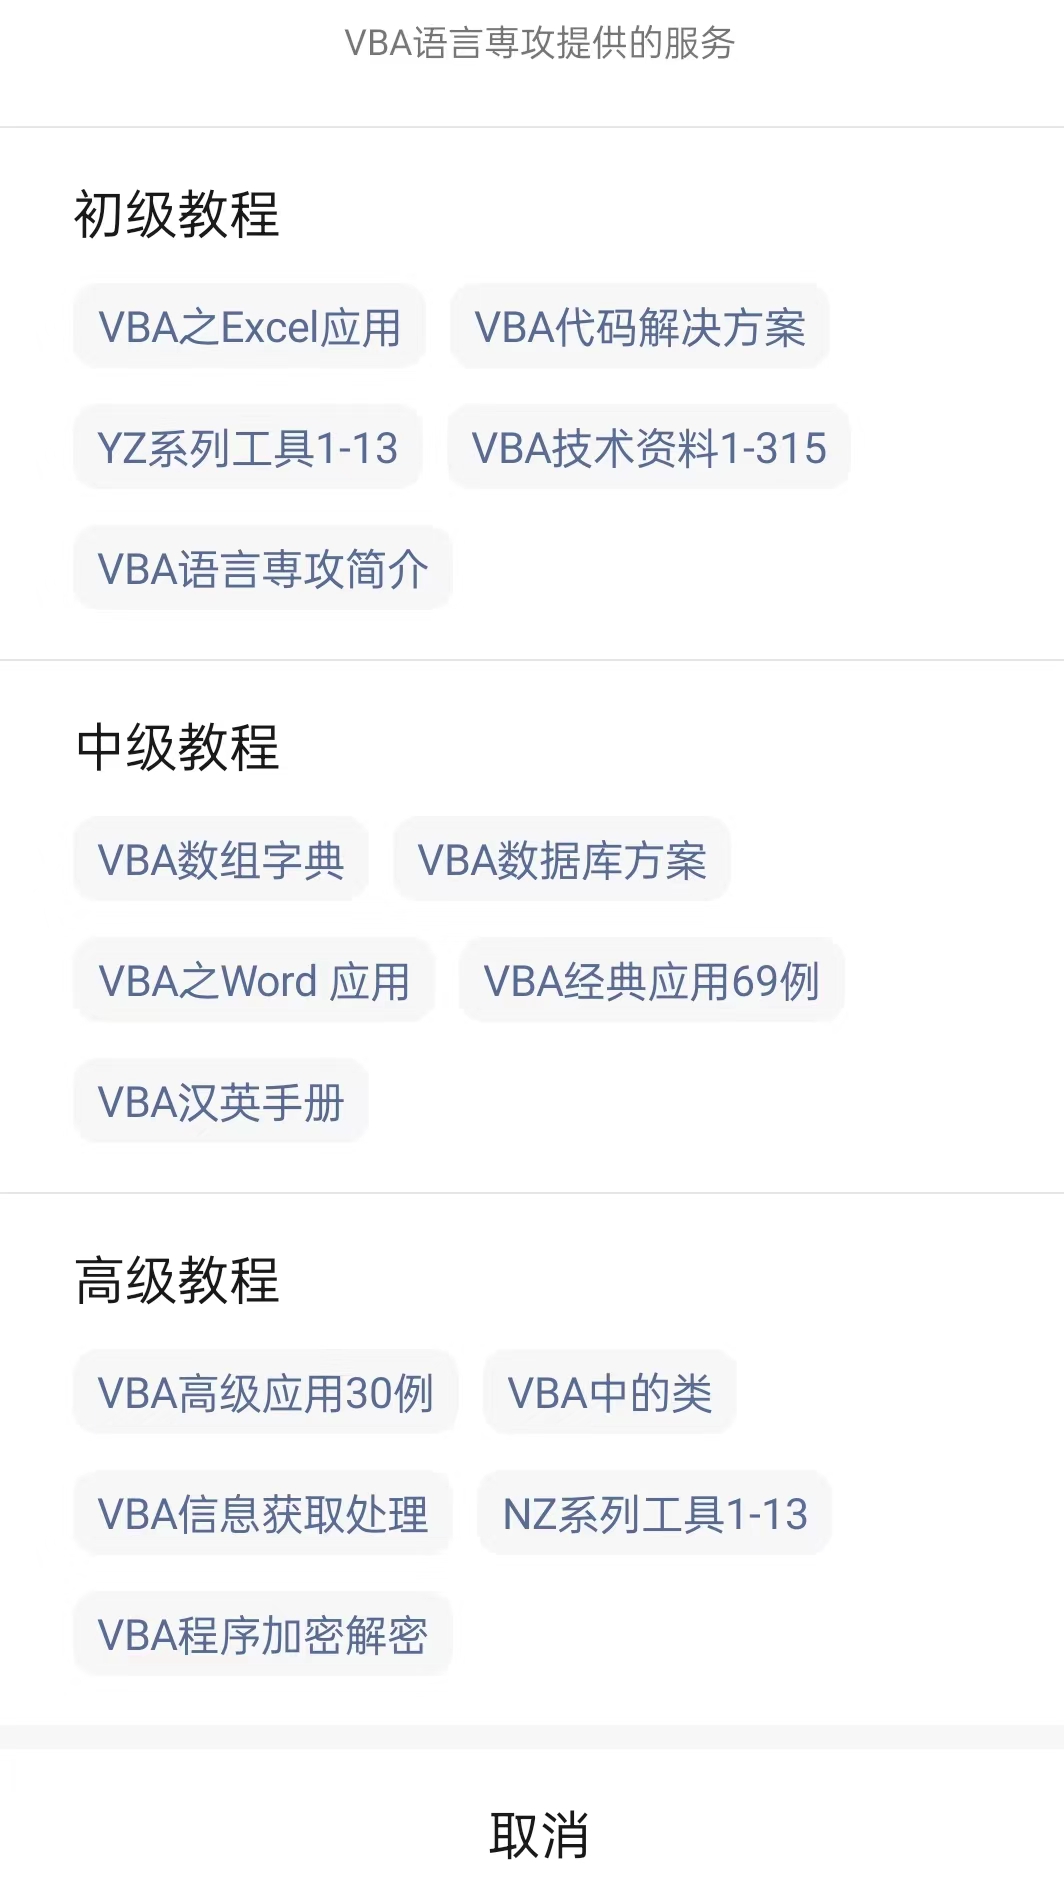 如何学习VBA_3.2.12.13:VBA中工作表函数的利用